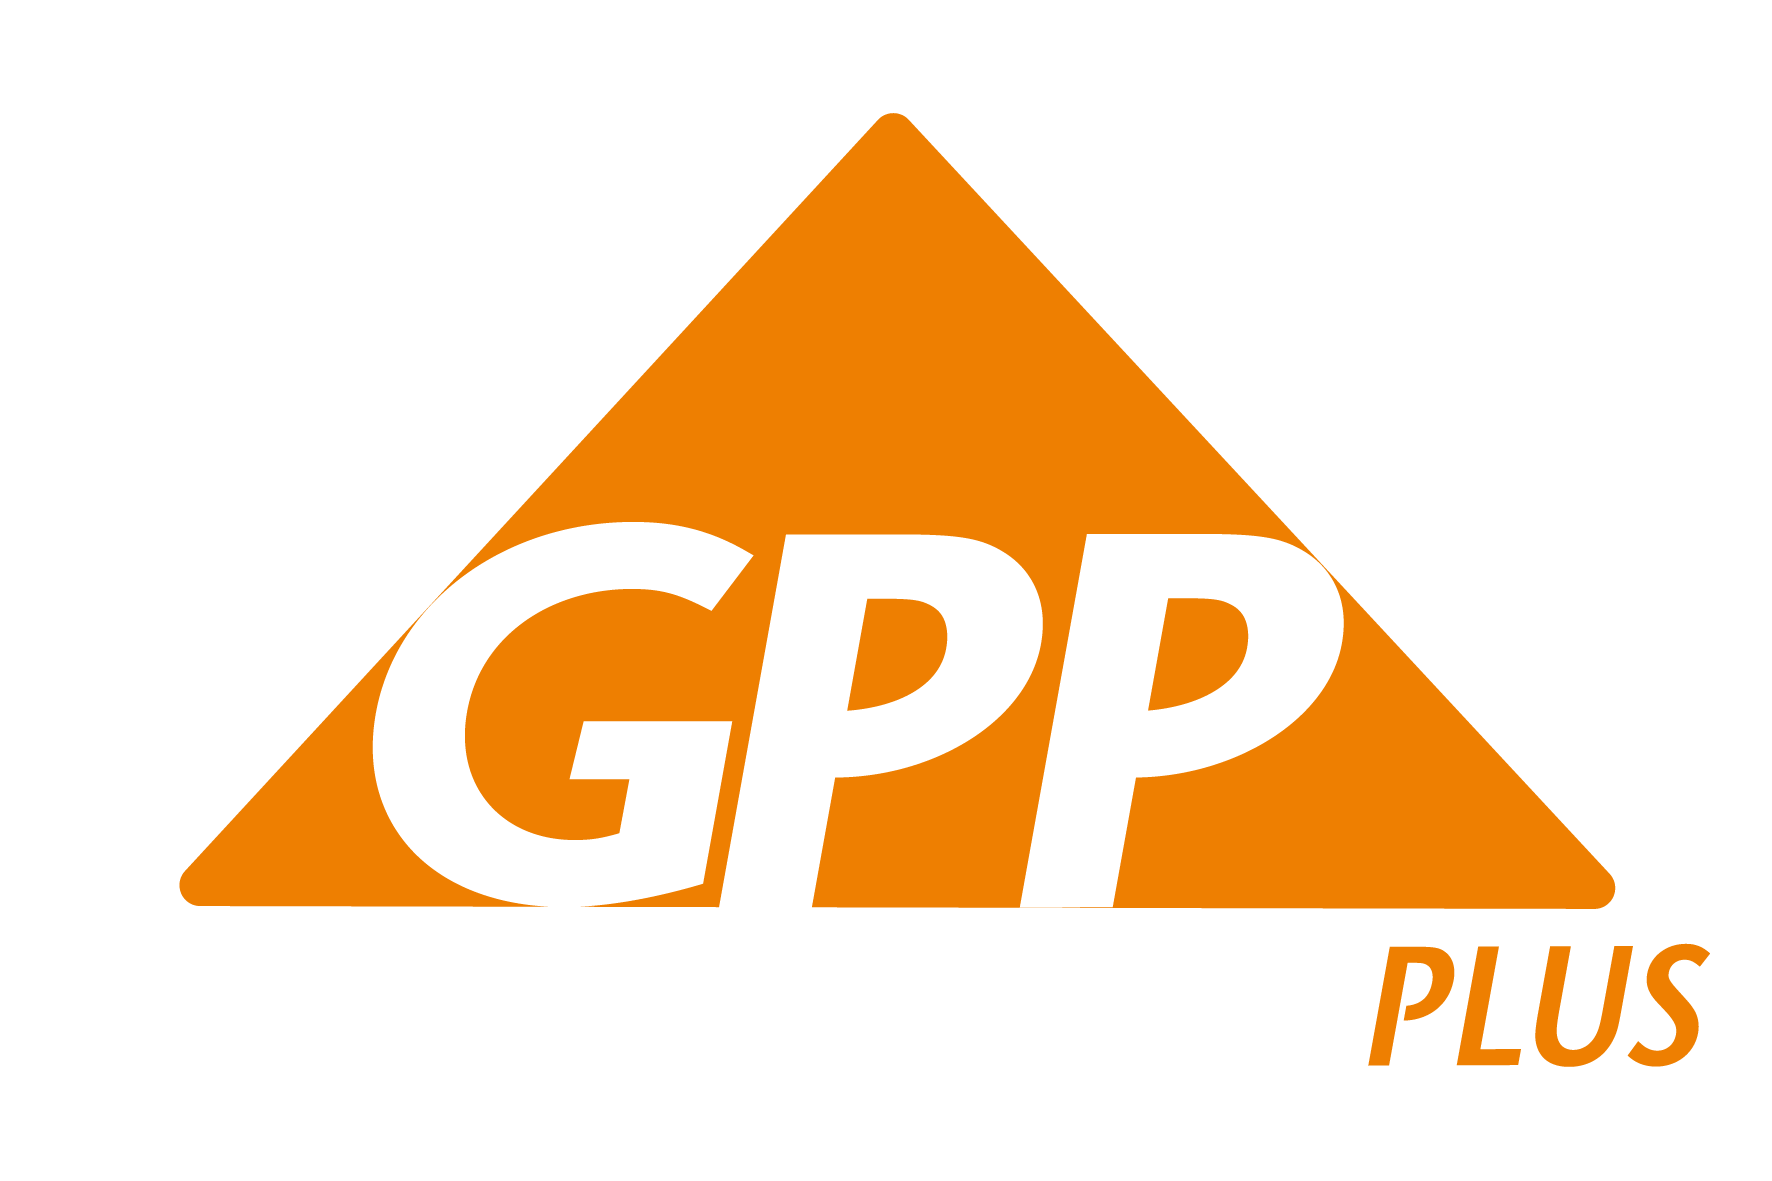 projektové riadenie garant partner plus